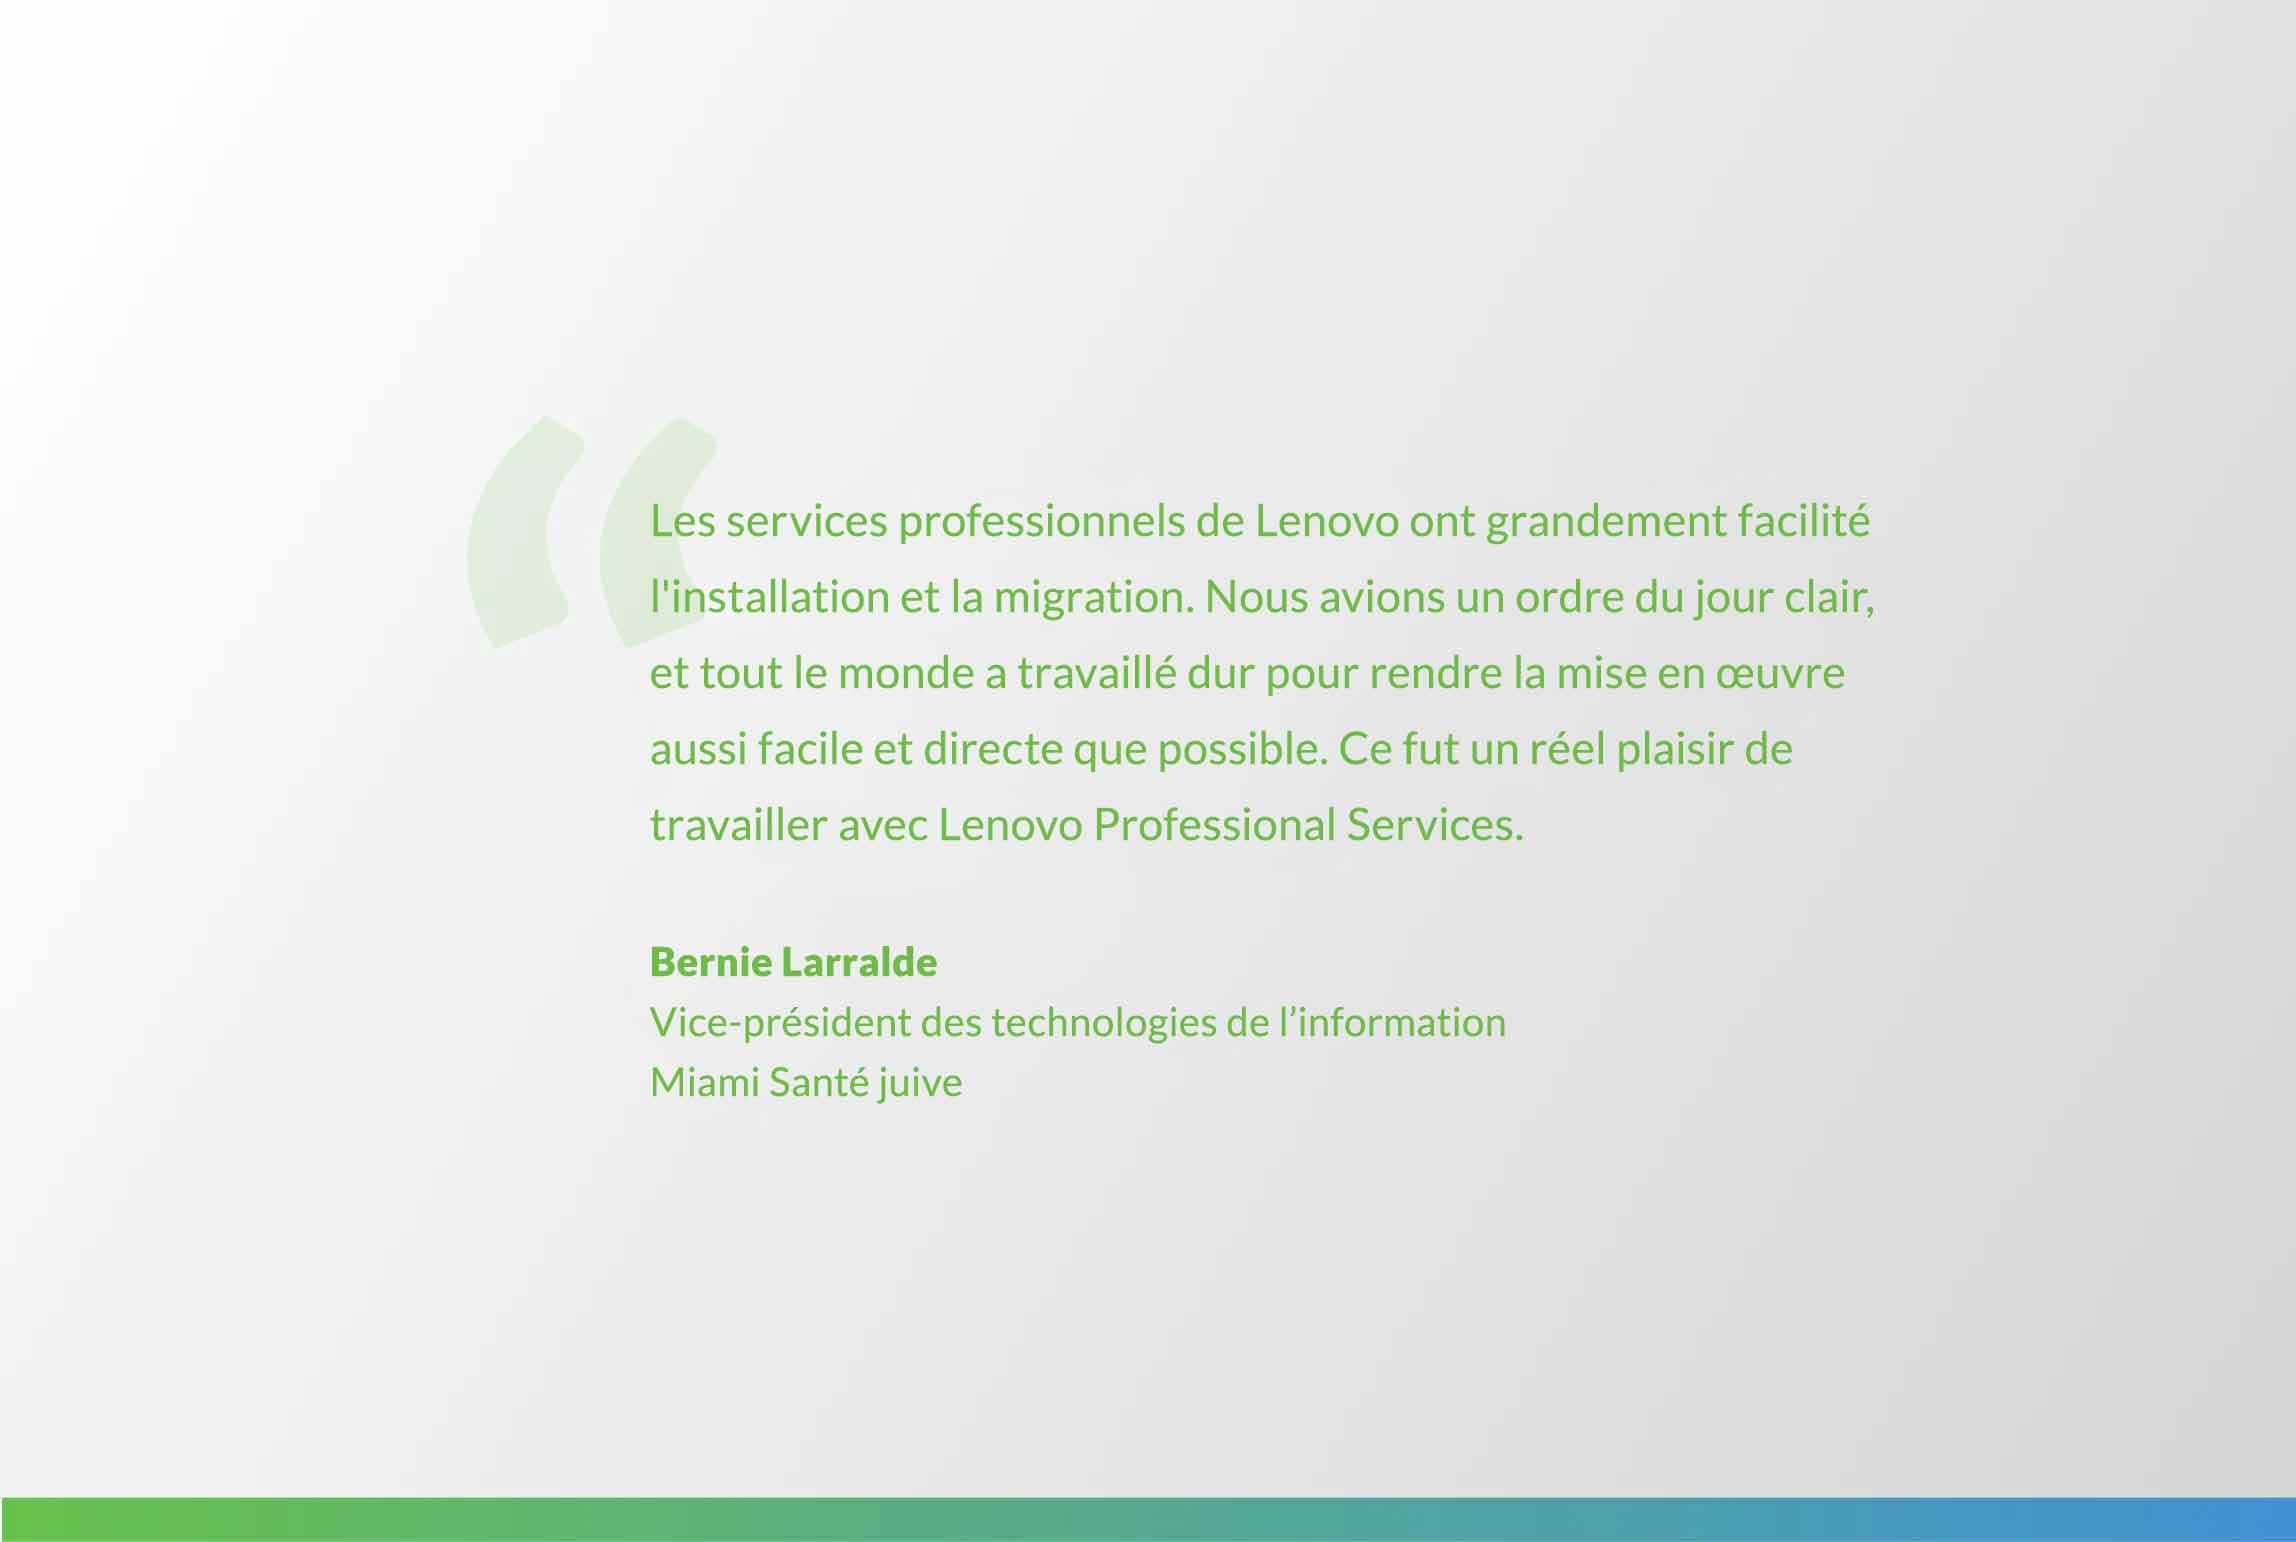 citation de Bernie Larralde : L’équipe de Lenovo Professional Services a rendu l’intallation et la migration un jeu d’enfant. Nous avions un ordre du jour clair, et tout le monde a travaillé dur pour rendre la mise en œuvre aussi facile et directe que possible. Ce fut un réel plaisir de travailler avec Lenovo Professional Services.